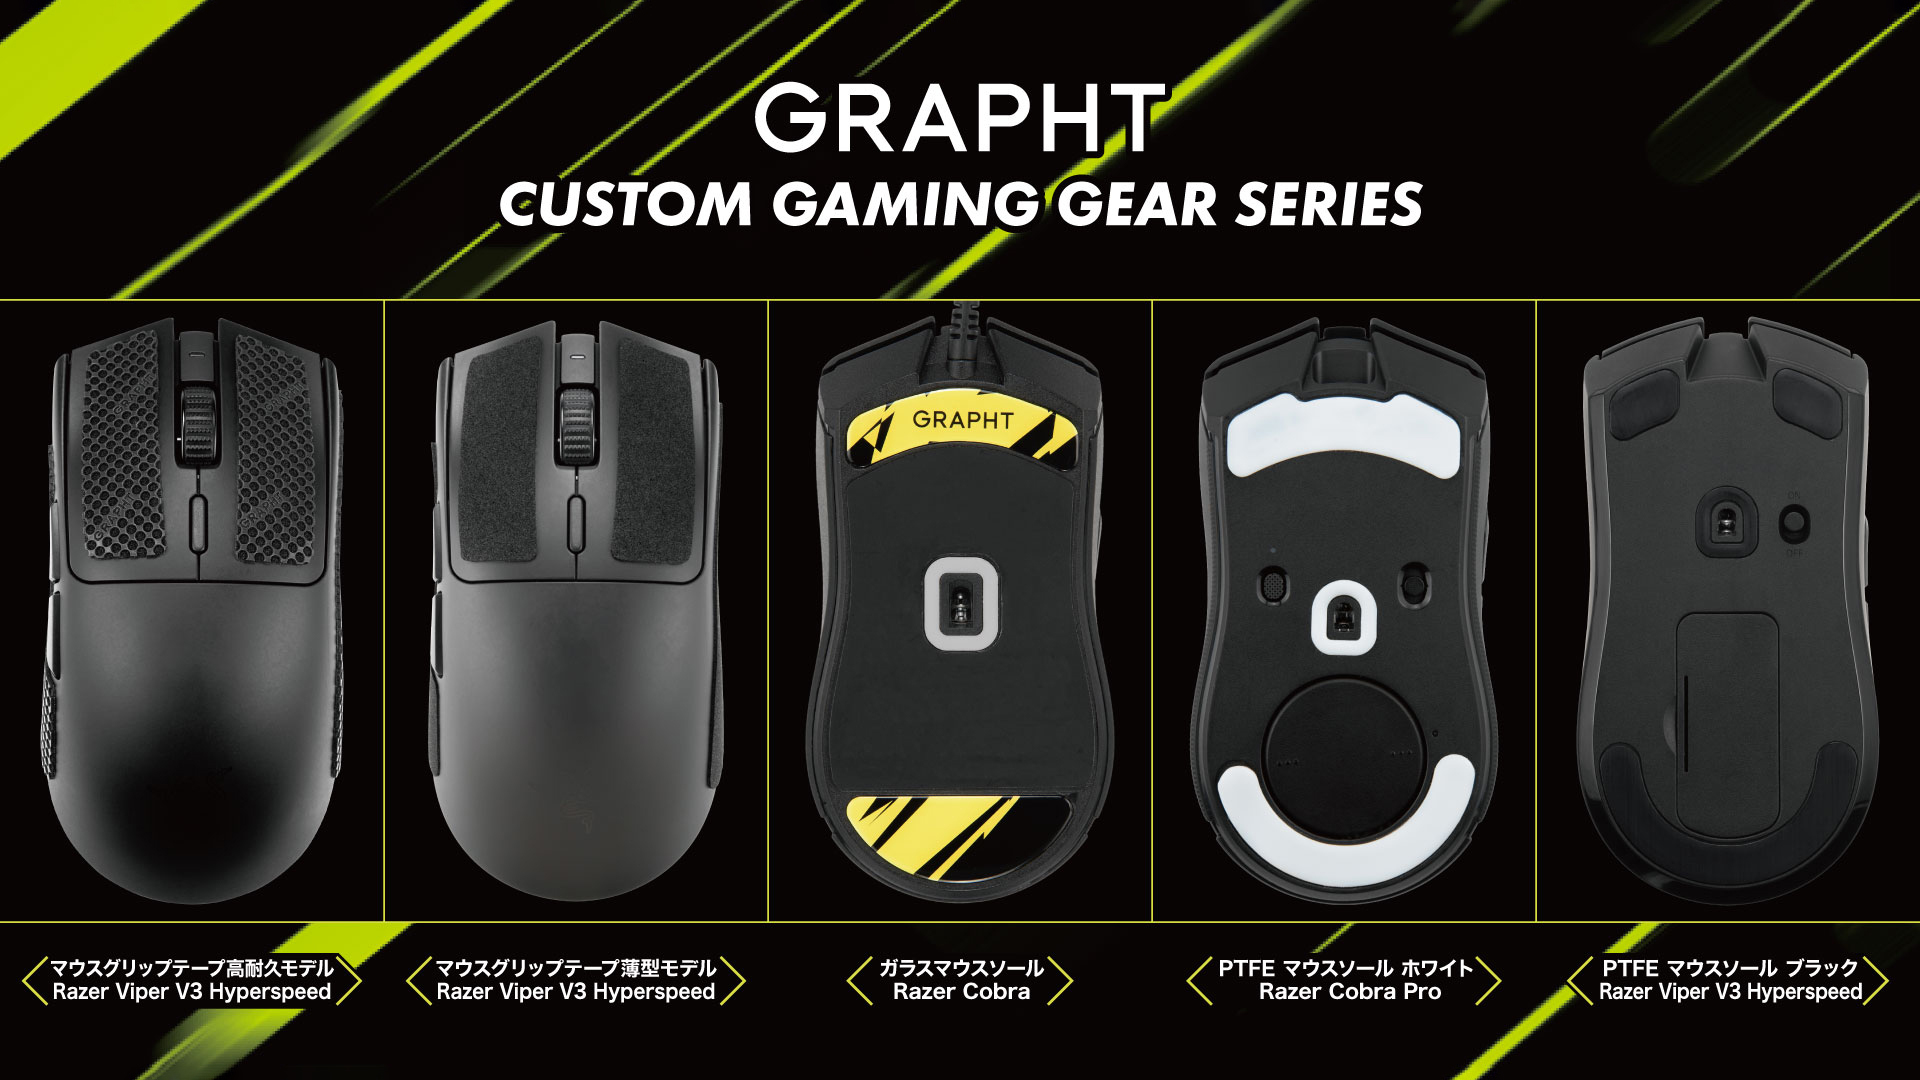 GRAPHT、ワンランク上の操作感を実現する
ゲーマー向けギアシリーズより
新機種対応のマウス用アイテムを11月30日(木)に発売！